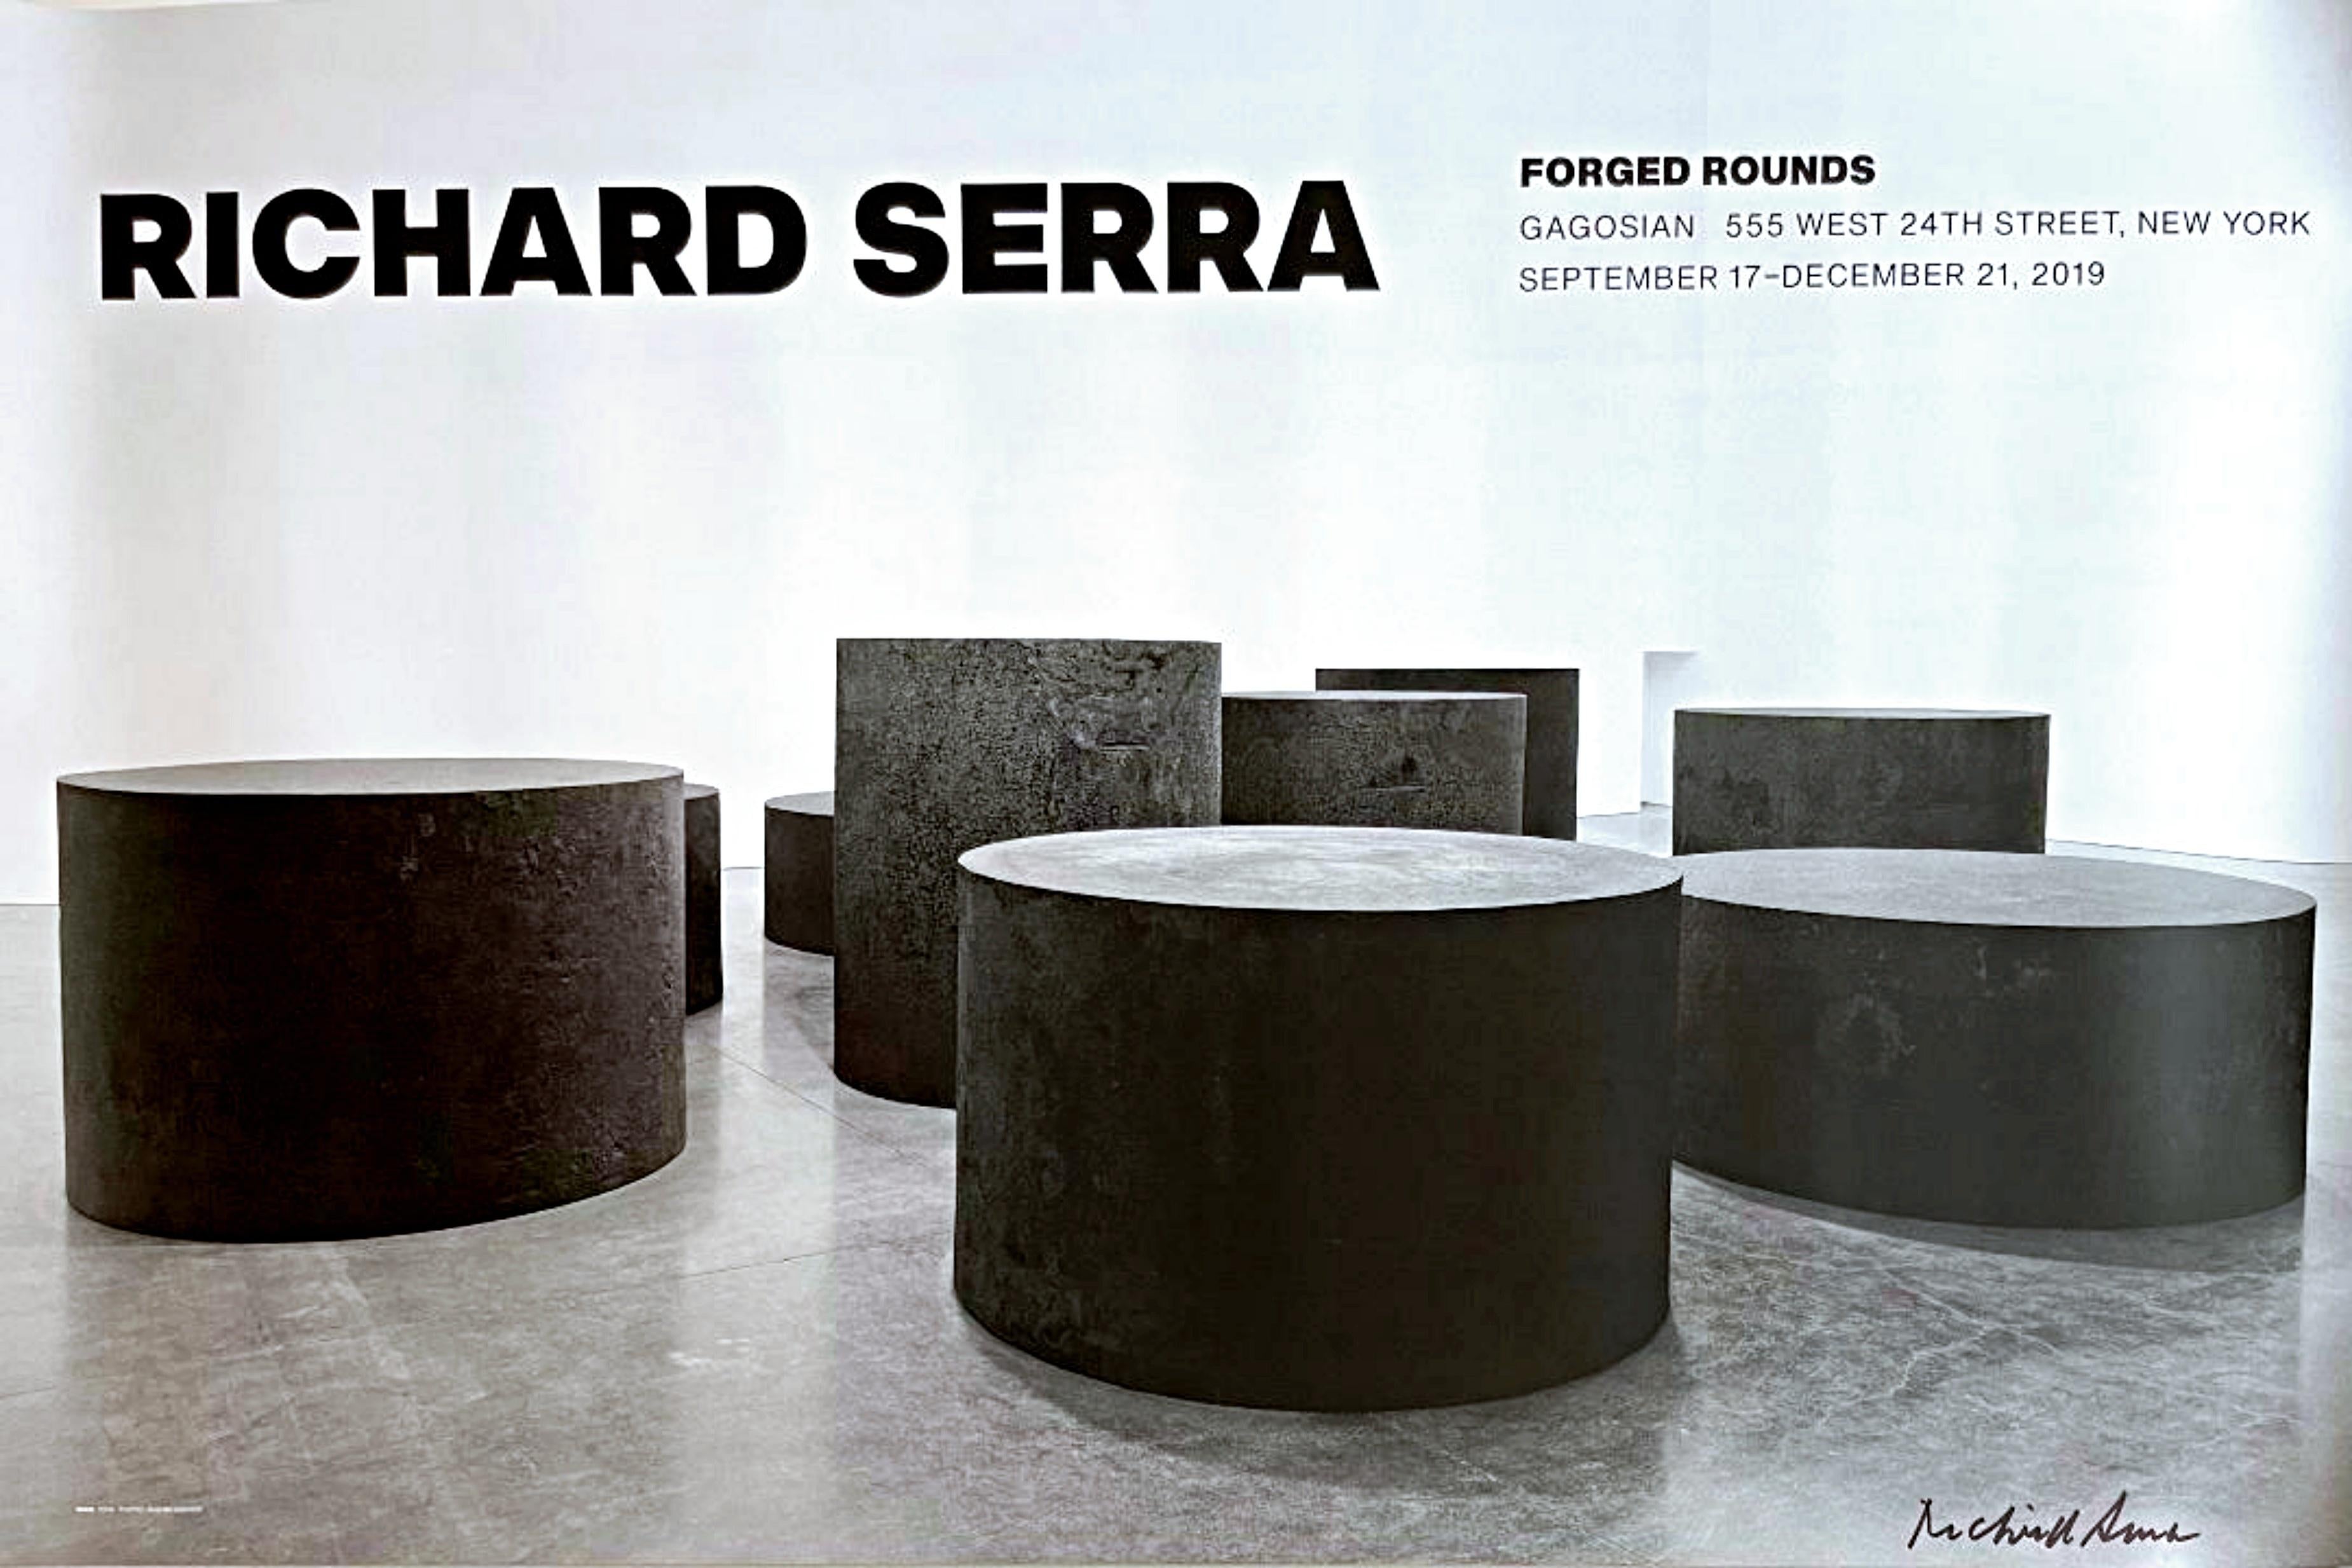 Forged Rounds, Gagosian gallery exhibition poster, handsigniert von Richard Serra 